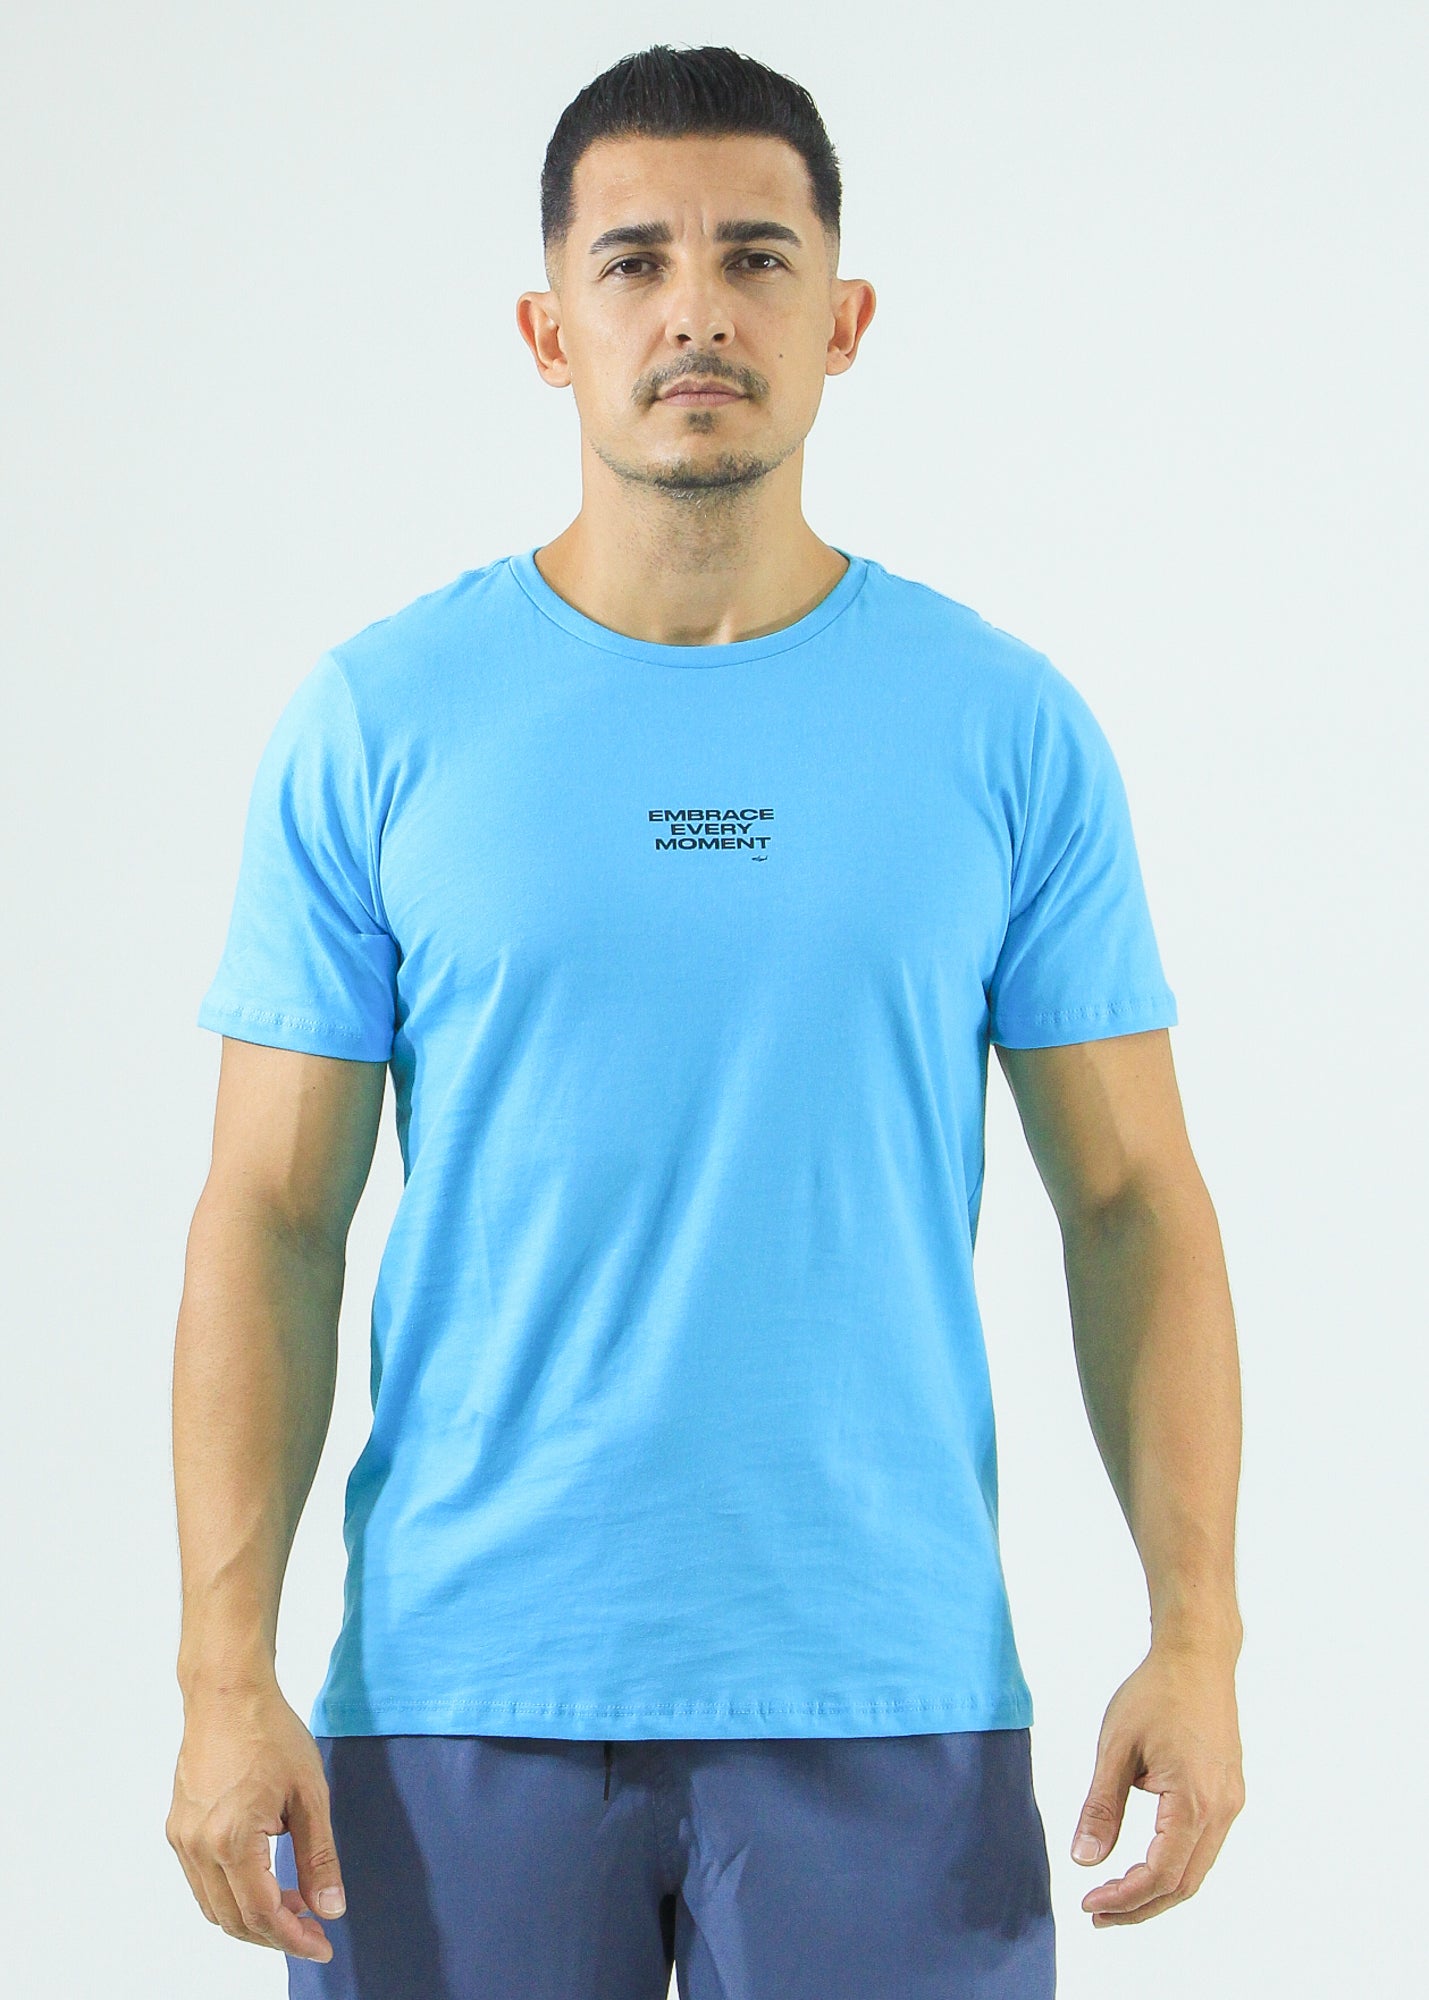 Camiseta Estampada Moment - Azul